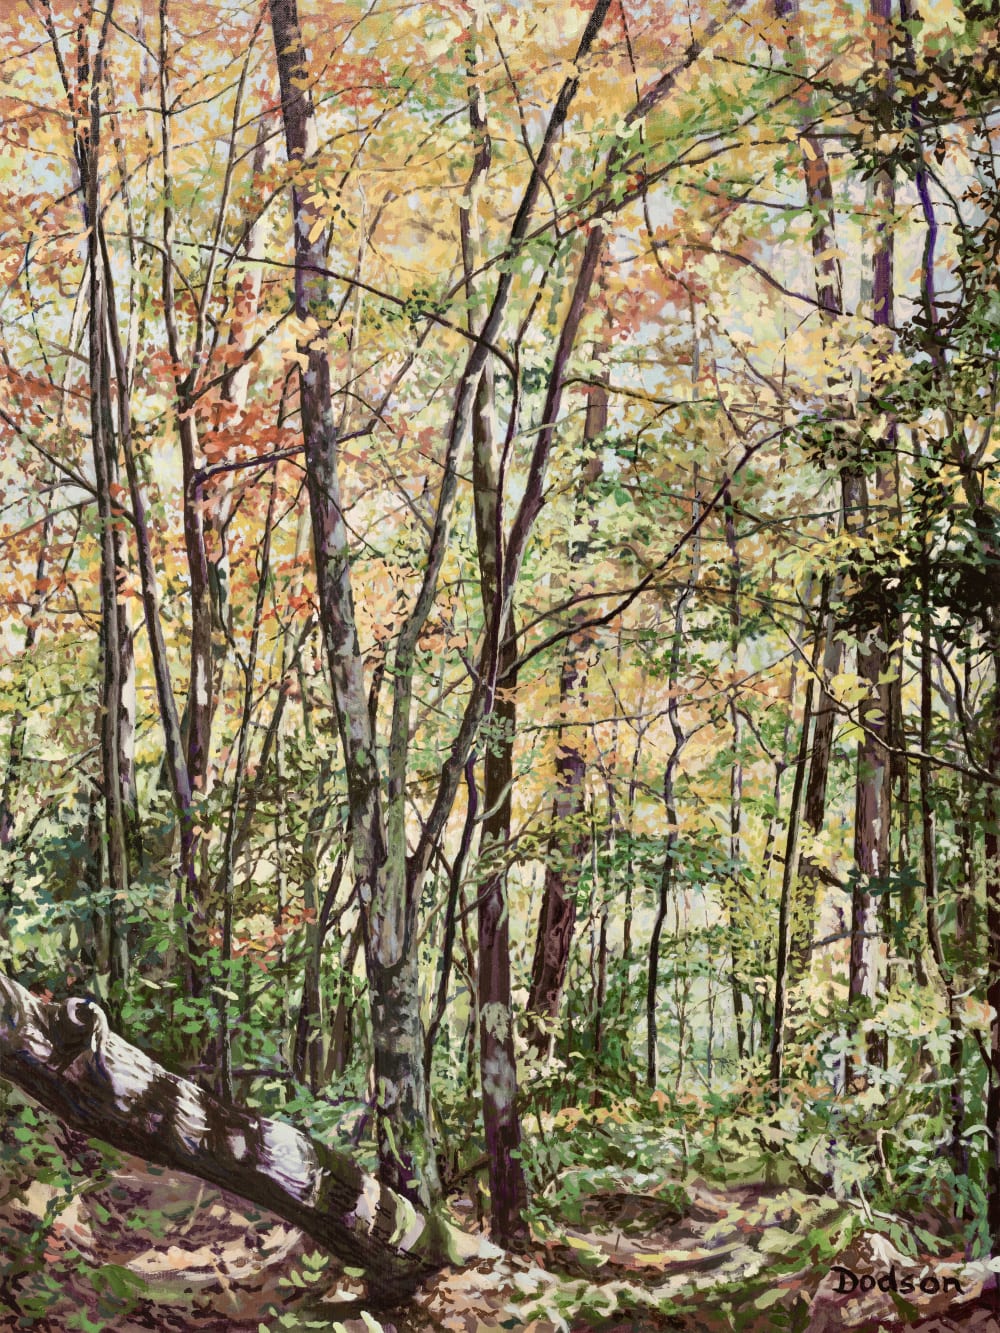 Lee Ann Dodson : Autumn in Forest